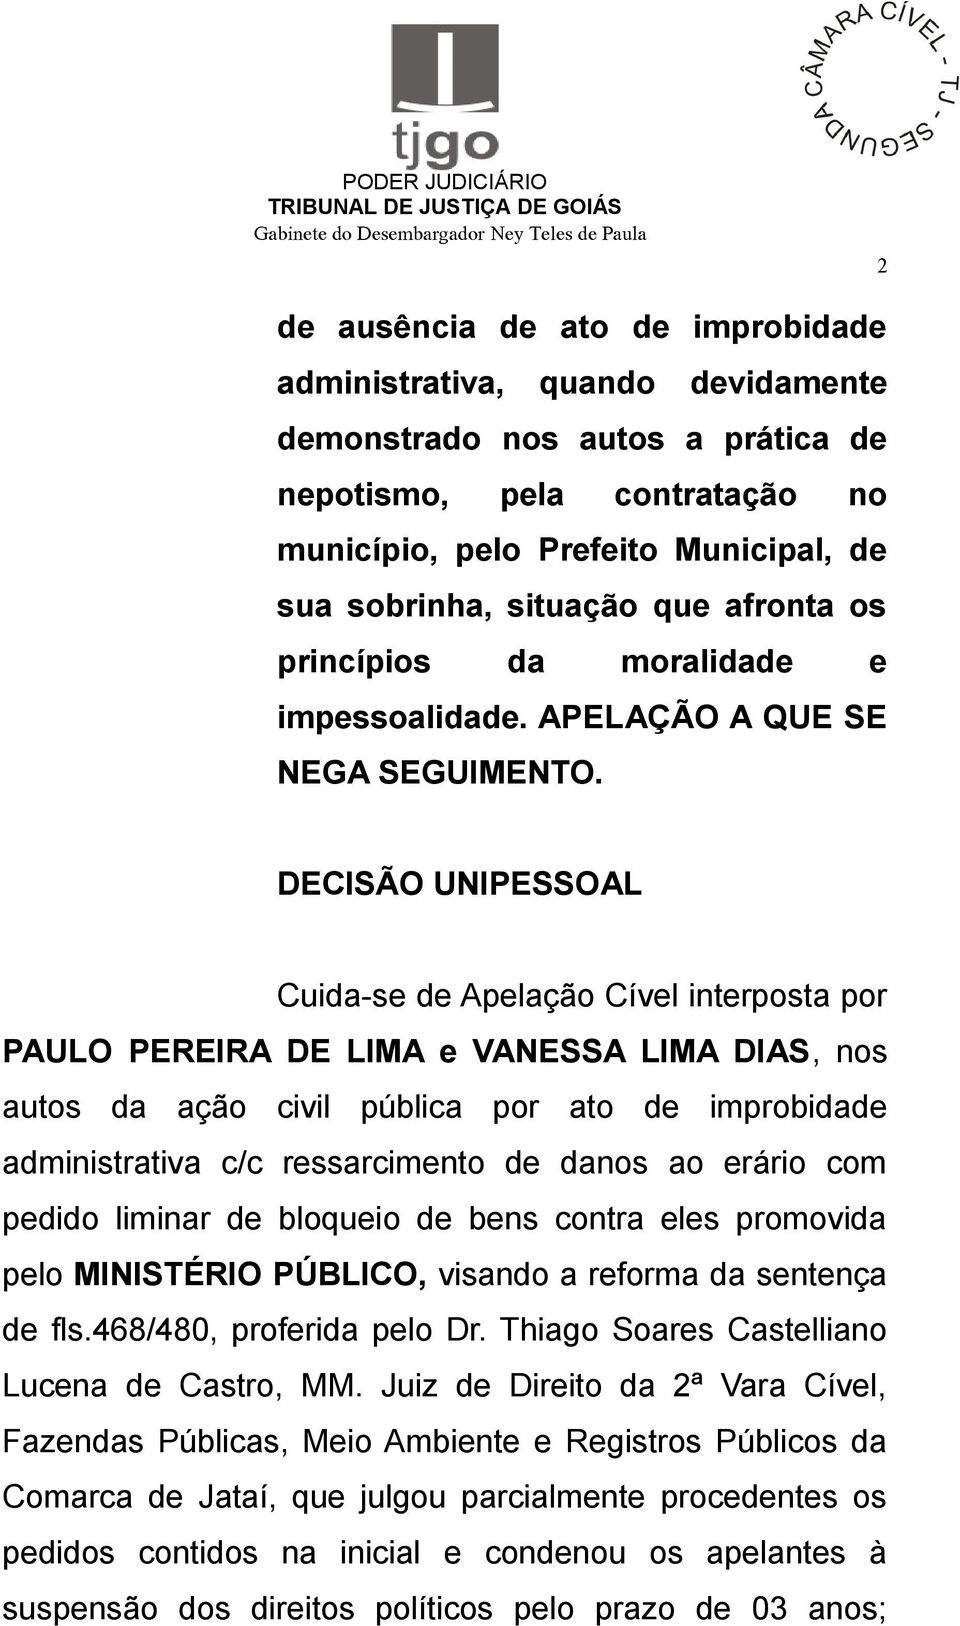 DECISÃO UNIPESSOAL Cuida-se de Apelação Cível interposta por PAULO PEREIRA DE LIMA e VANESSA LIMA DIAS, nos autos da ação civil pública por ato de improbidade administrativa c/c ressarcimento de